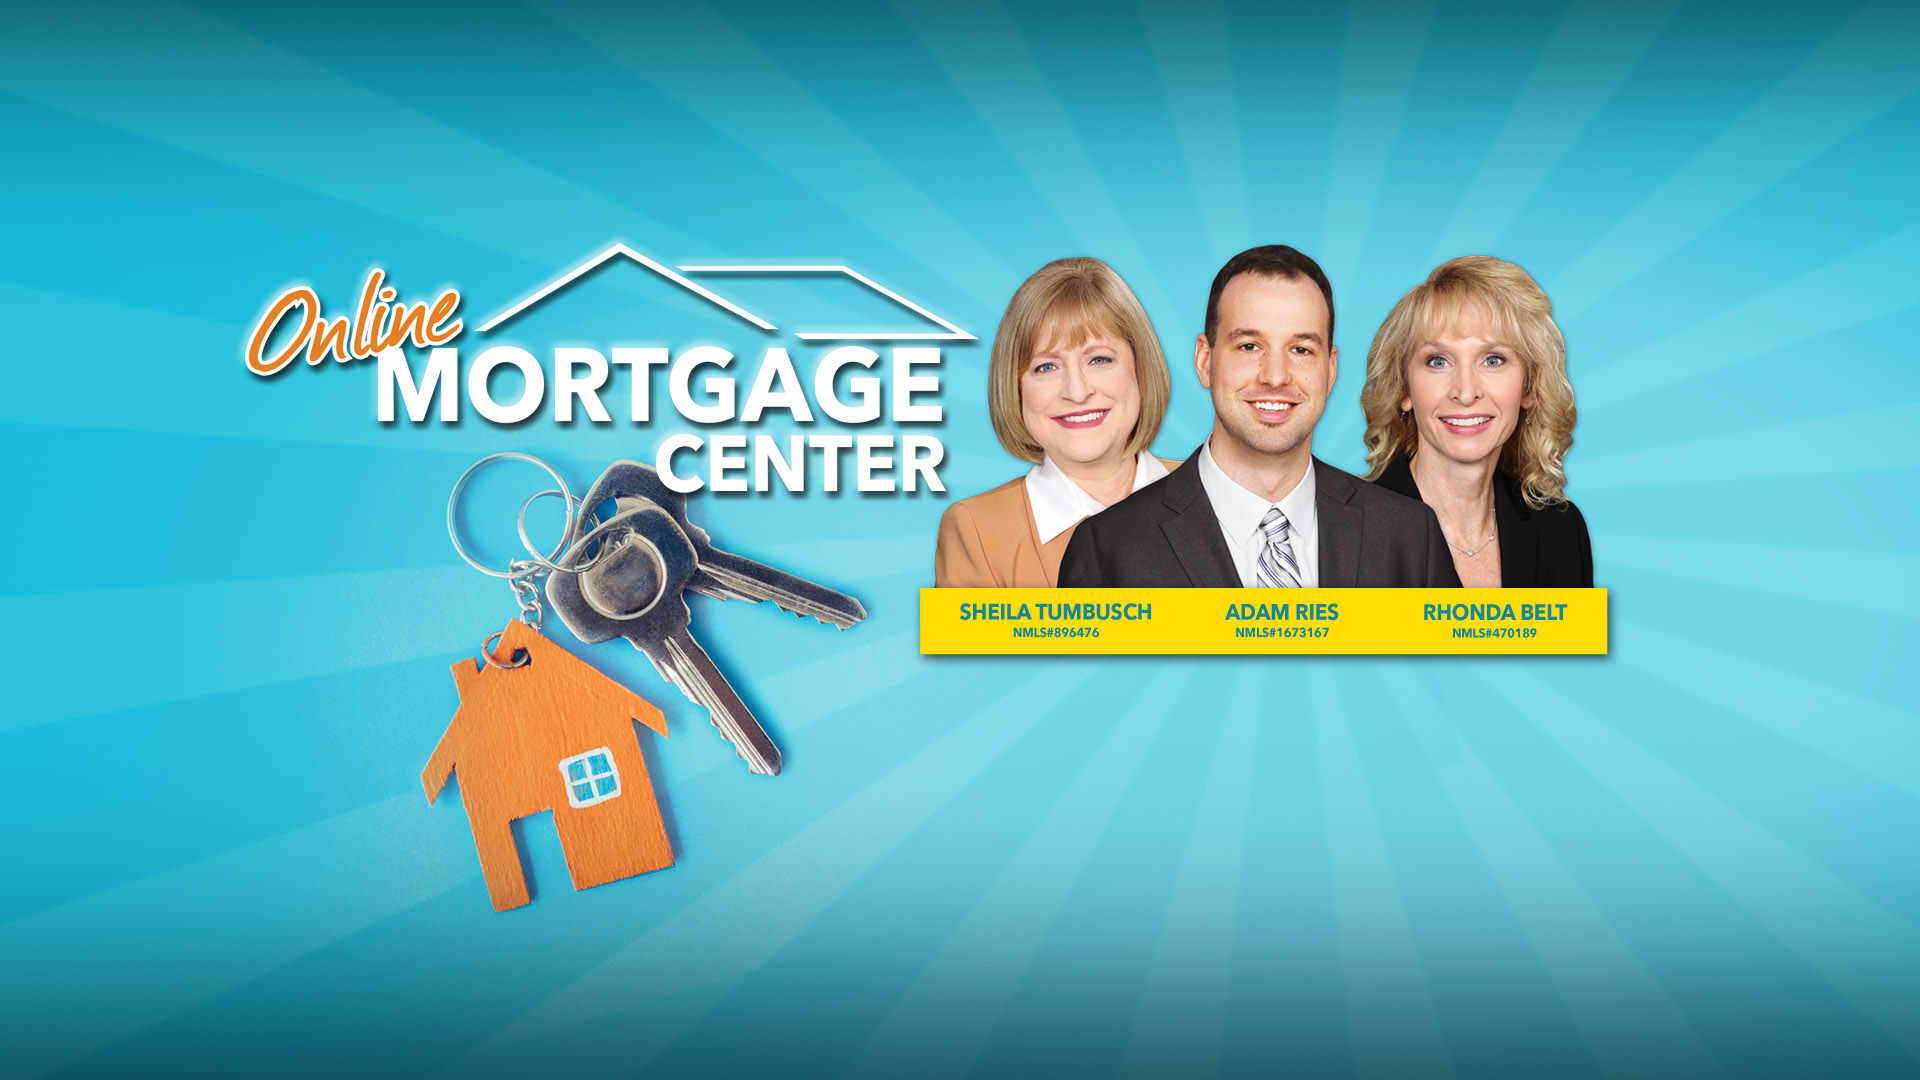 Loan Officer Mortgage Center Slide